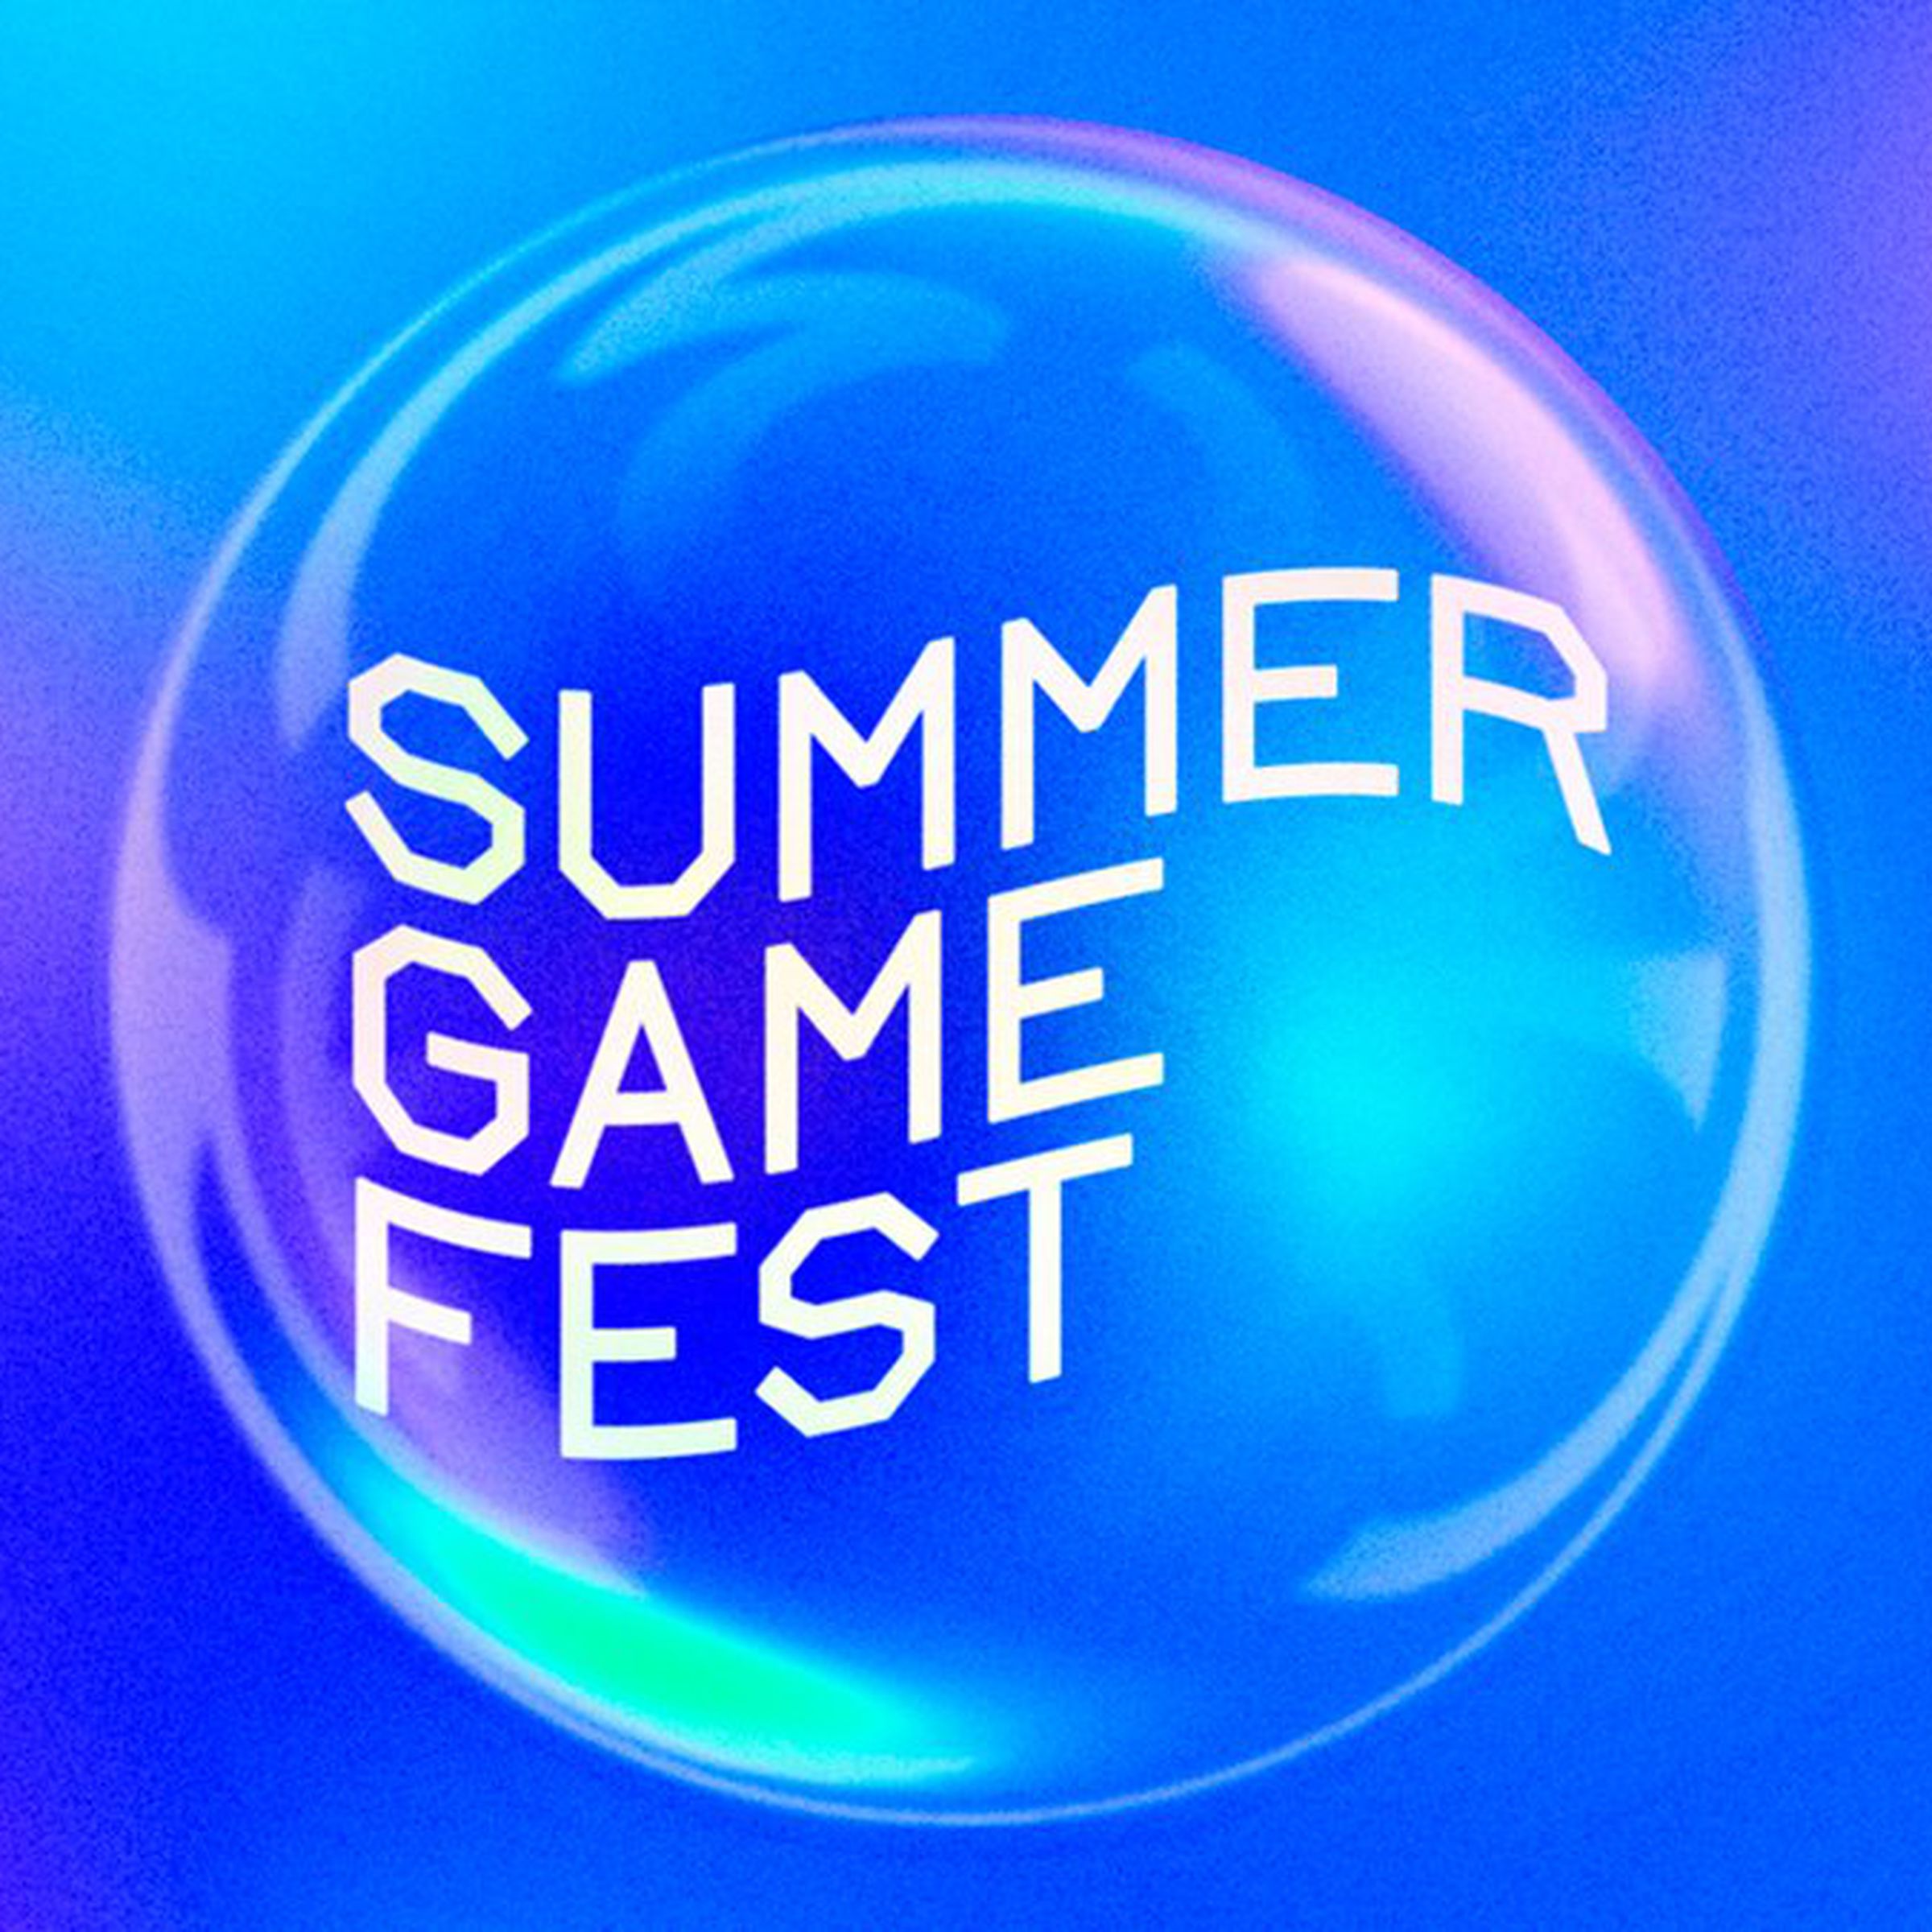 The Summer Game Fest logo.